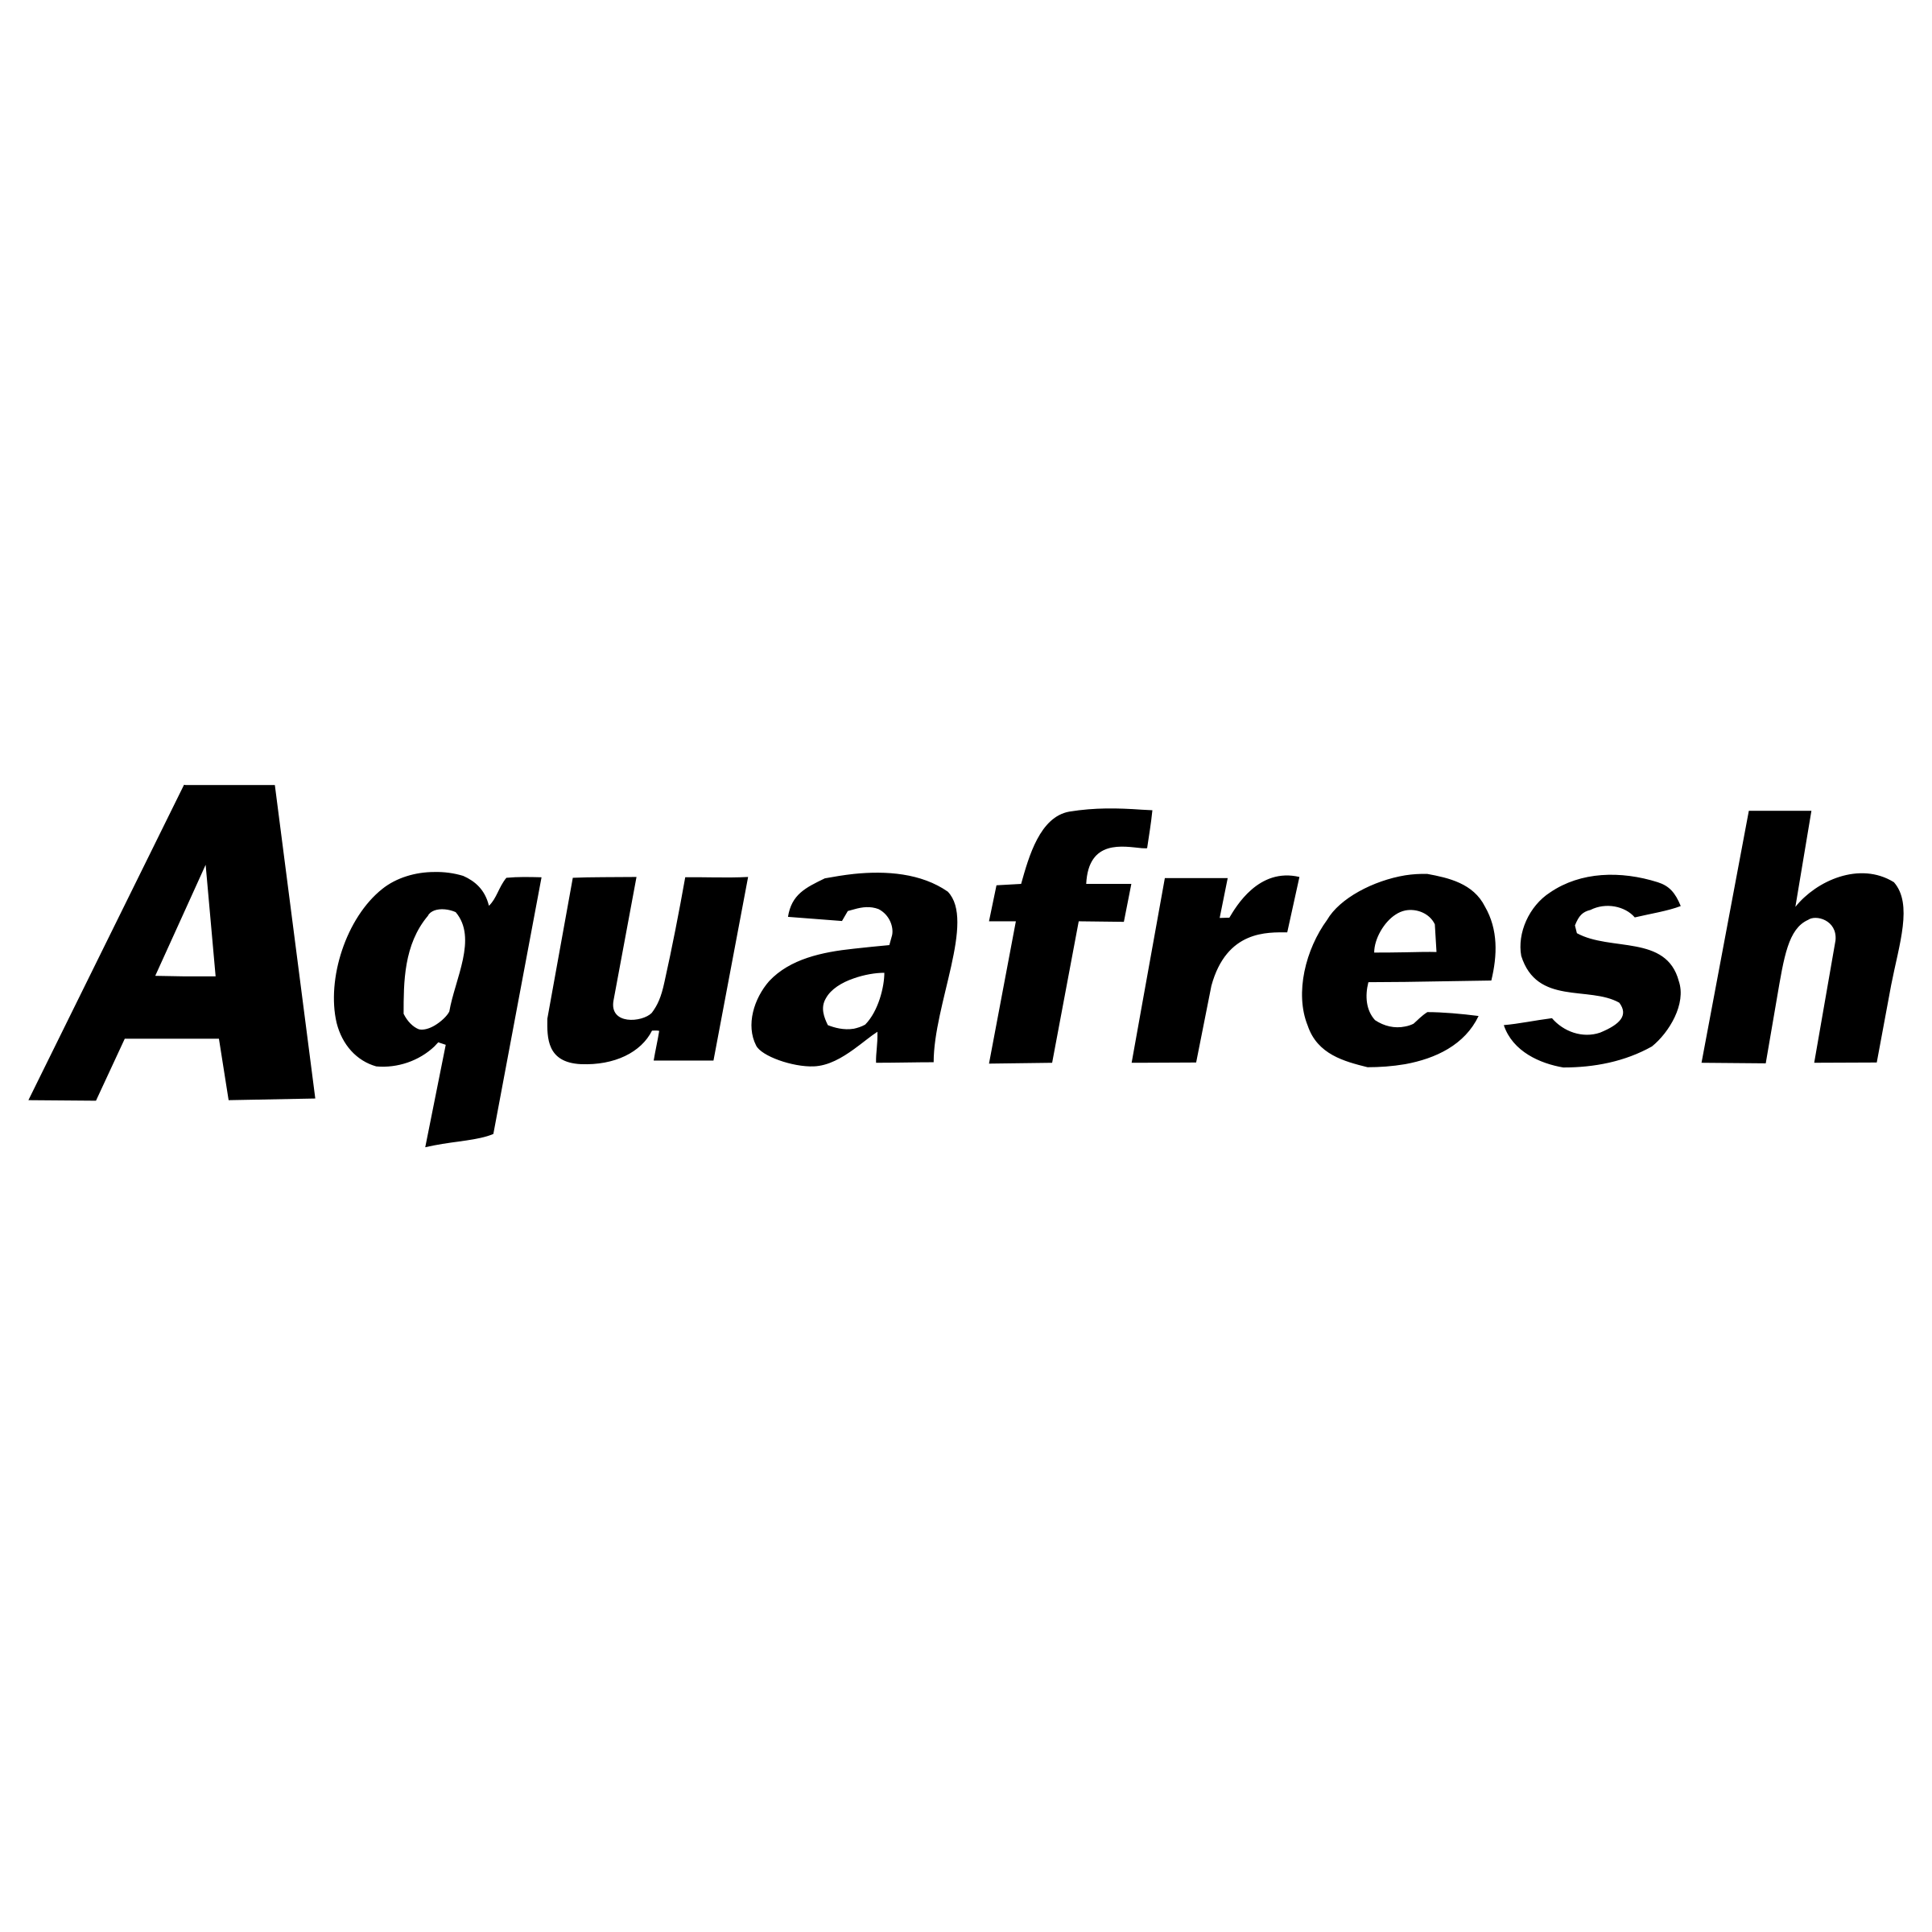 Aquafresh Logo - Aquafresh Logo PNG Transparent & SVG Vector - Freebie Supply